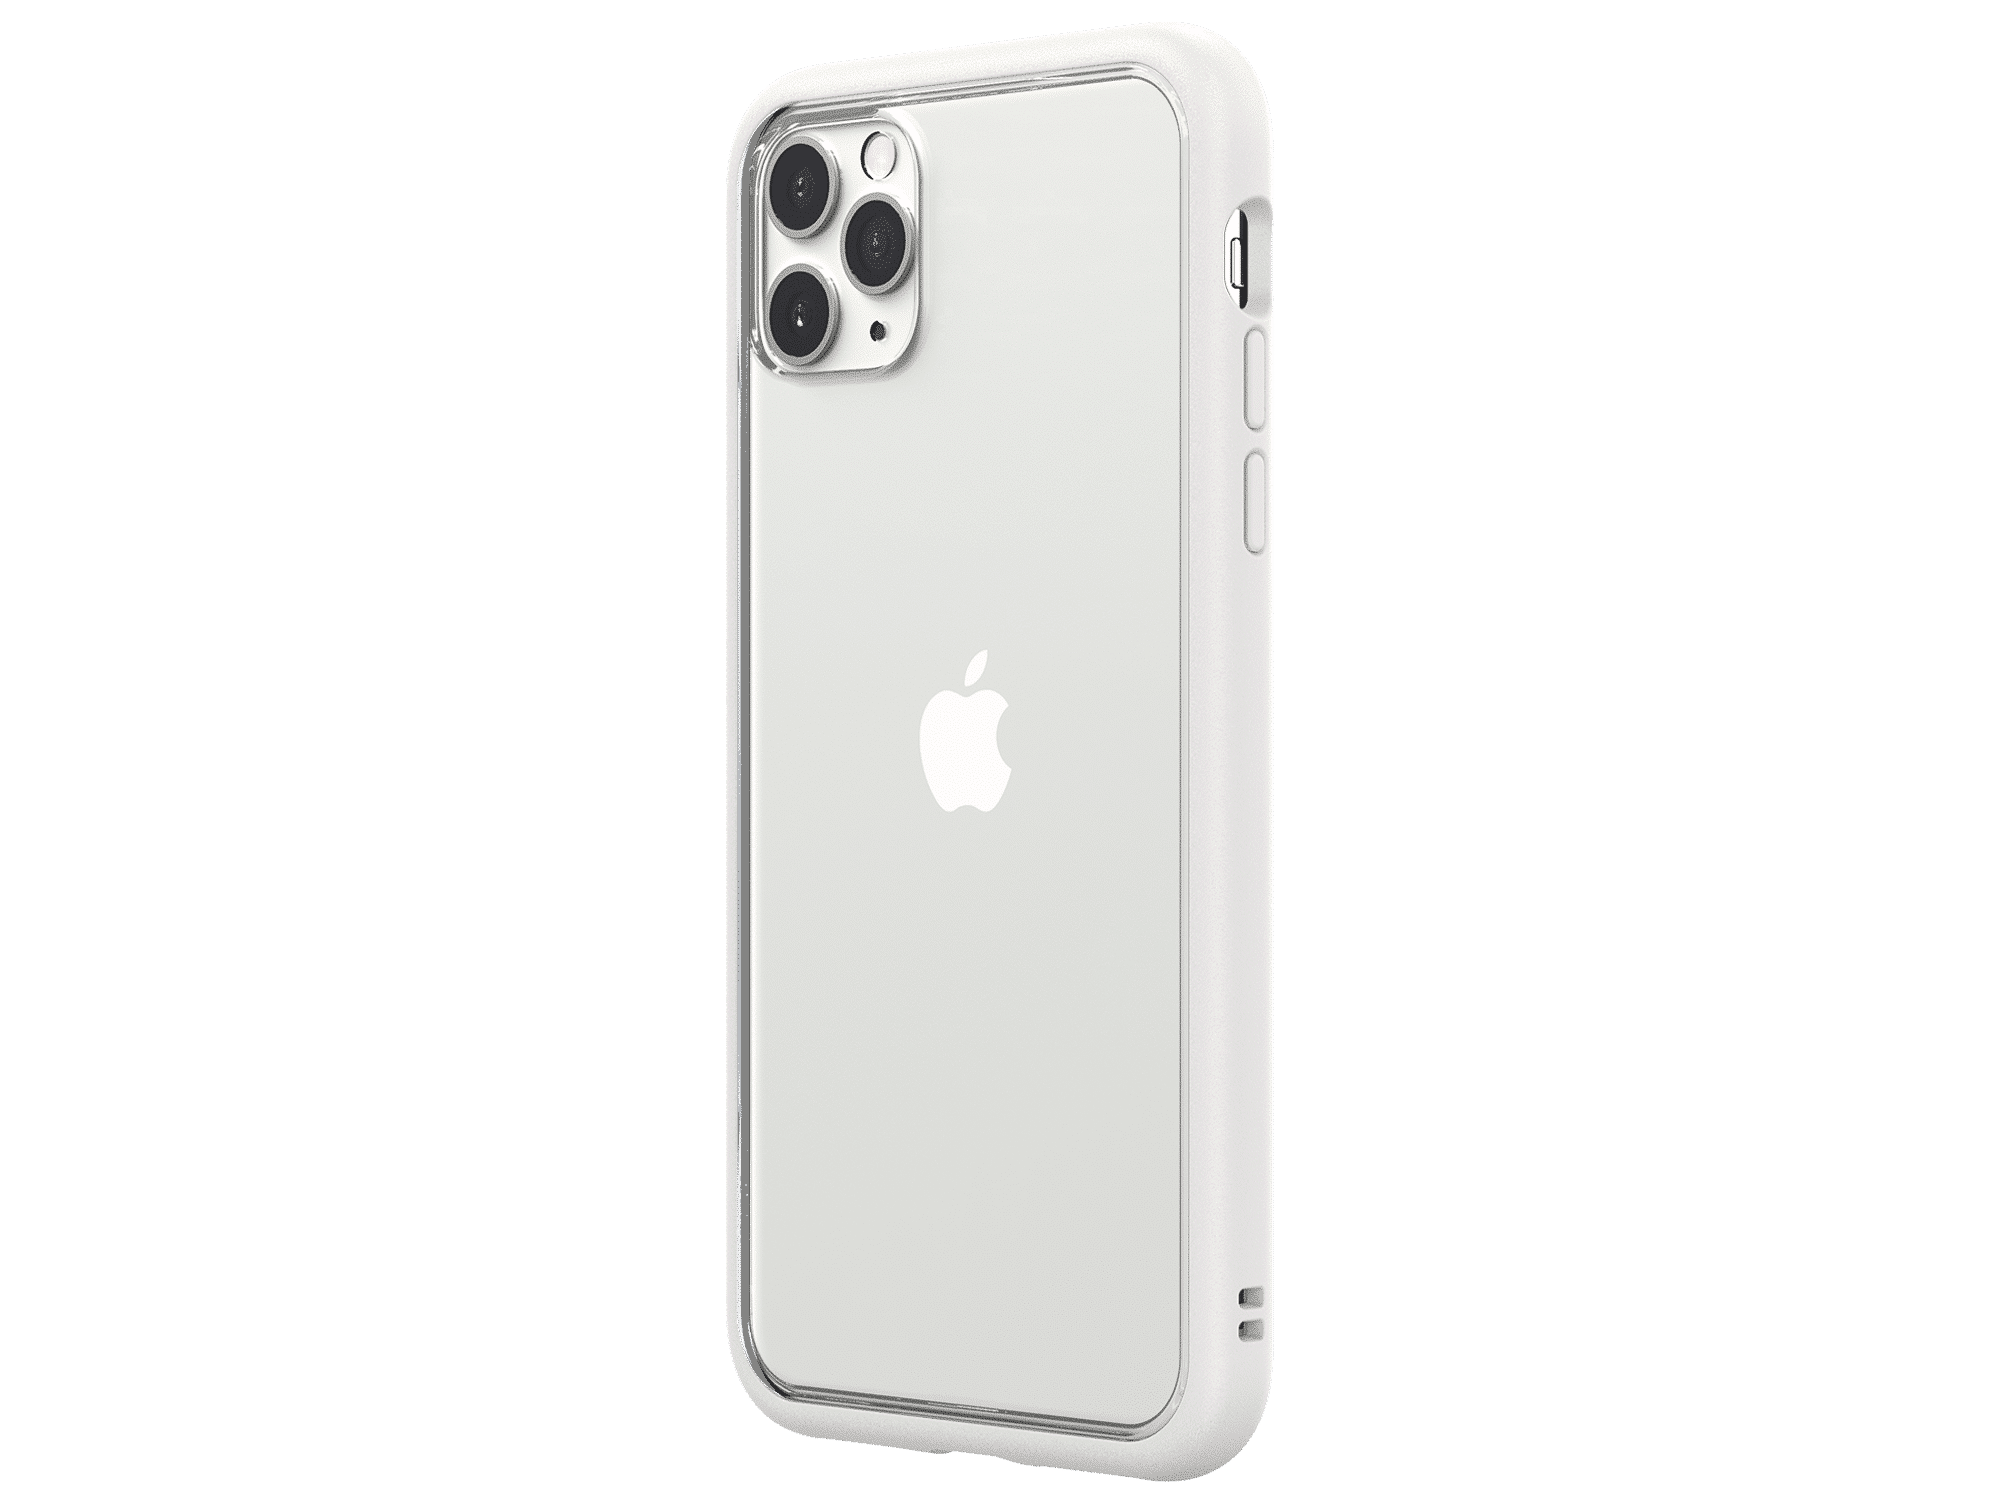 เคส RhinoShield รุ่น Mod NX - iPhone 11 Pro Max - ขาว